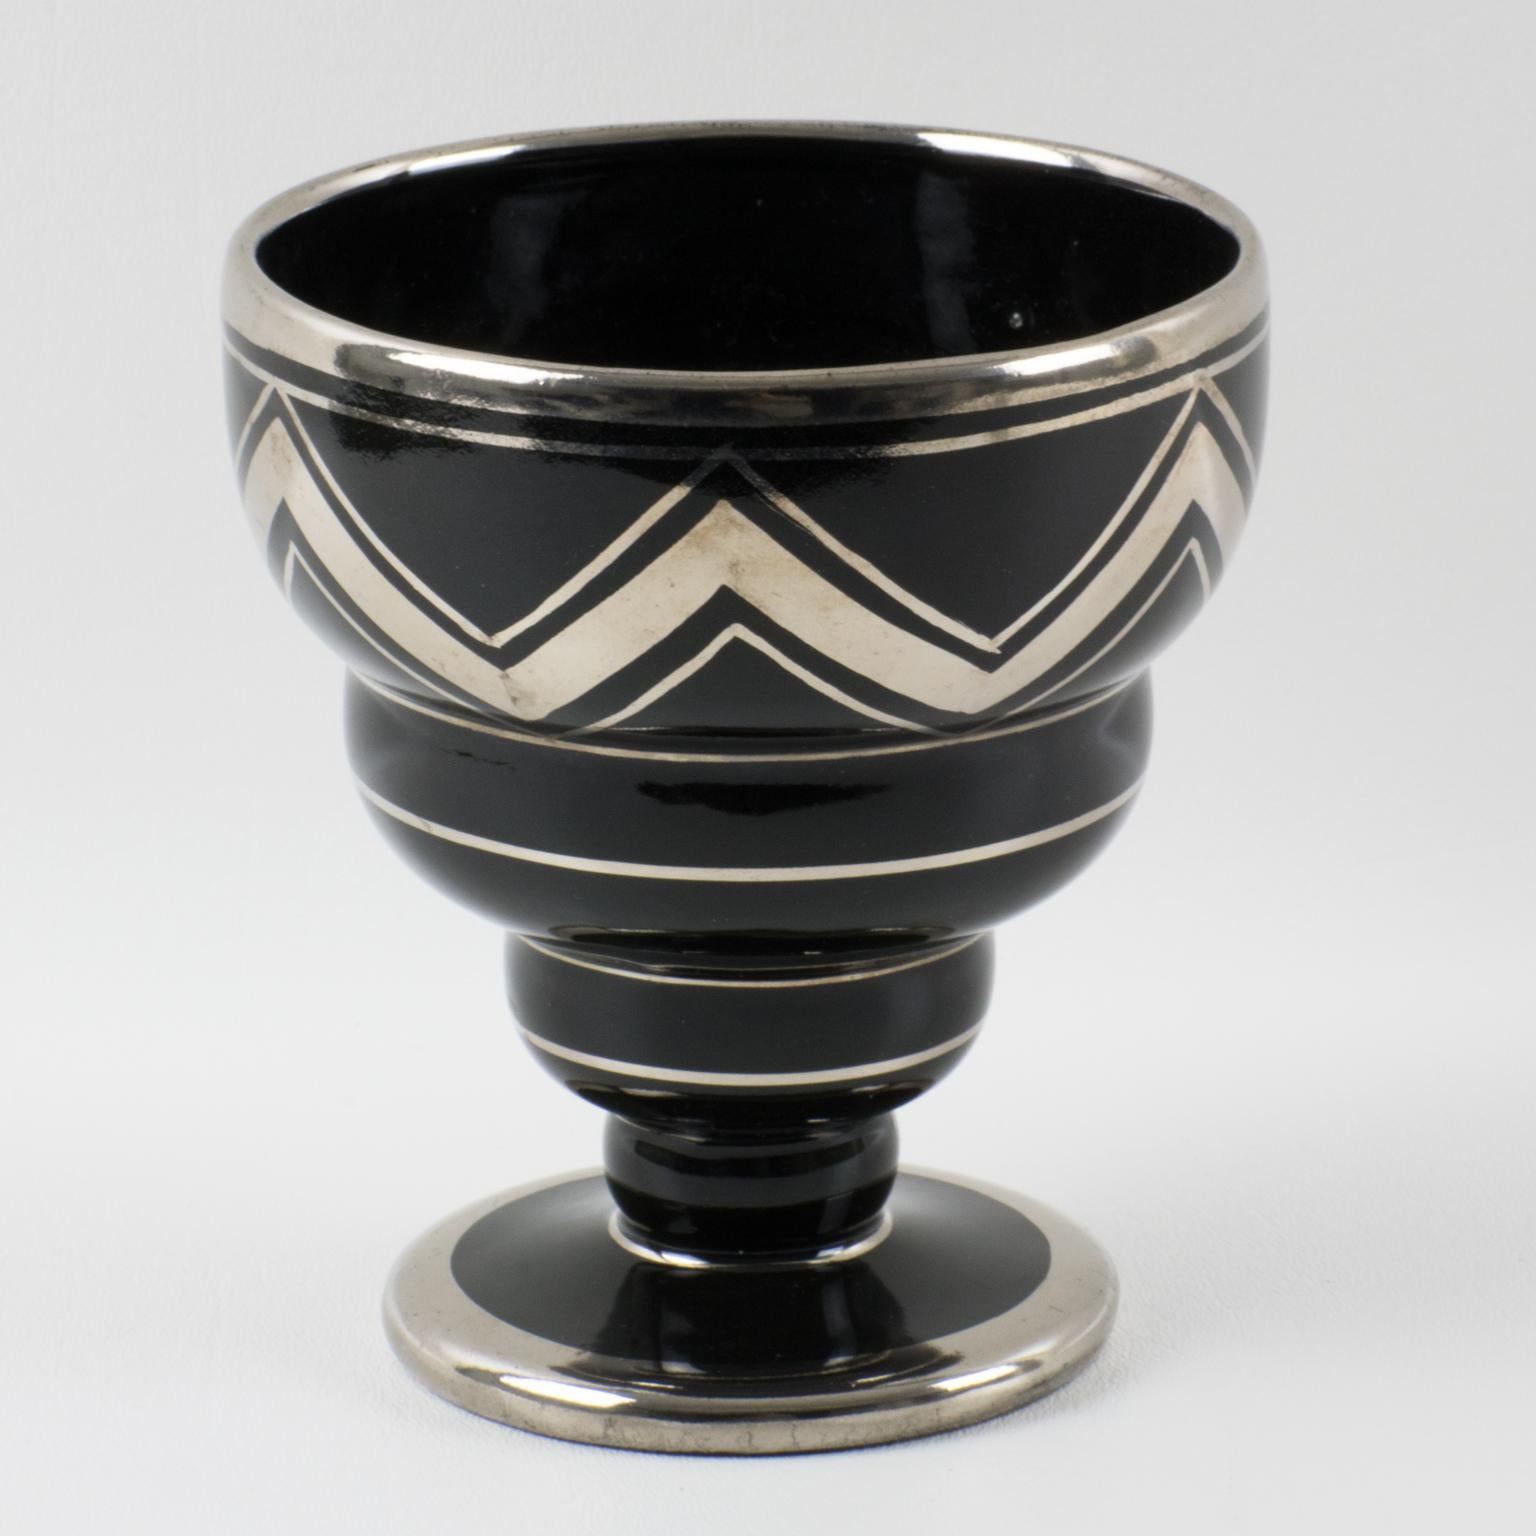 Ceram, Rouen, Frankreich, entwarf und fertigte diese stilvolle schwarze Keramikvase im französischen Art déco-Stil der 1930er Jahre. Das dekorative Stück ist mit silbernen Ablagerungen und einem geometrischen Wellenmuster verziert. Auf dem